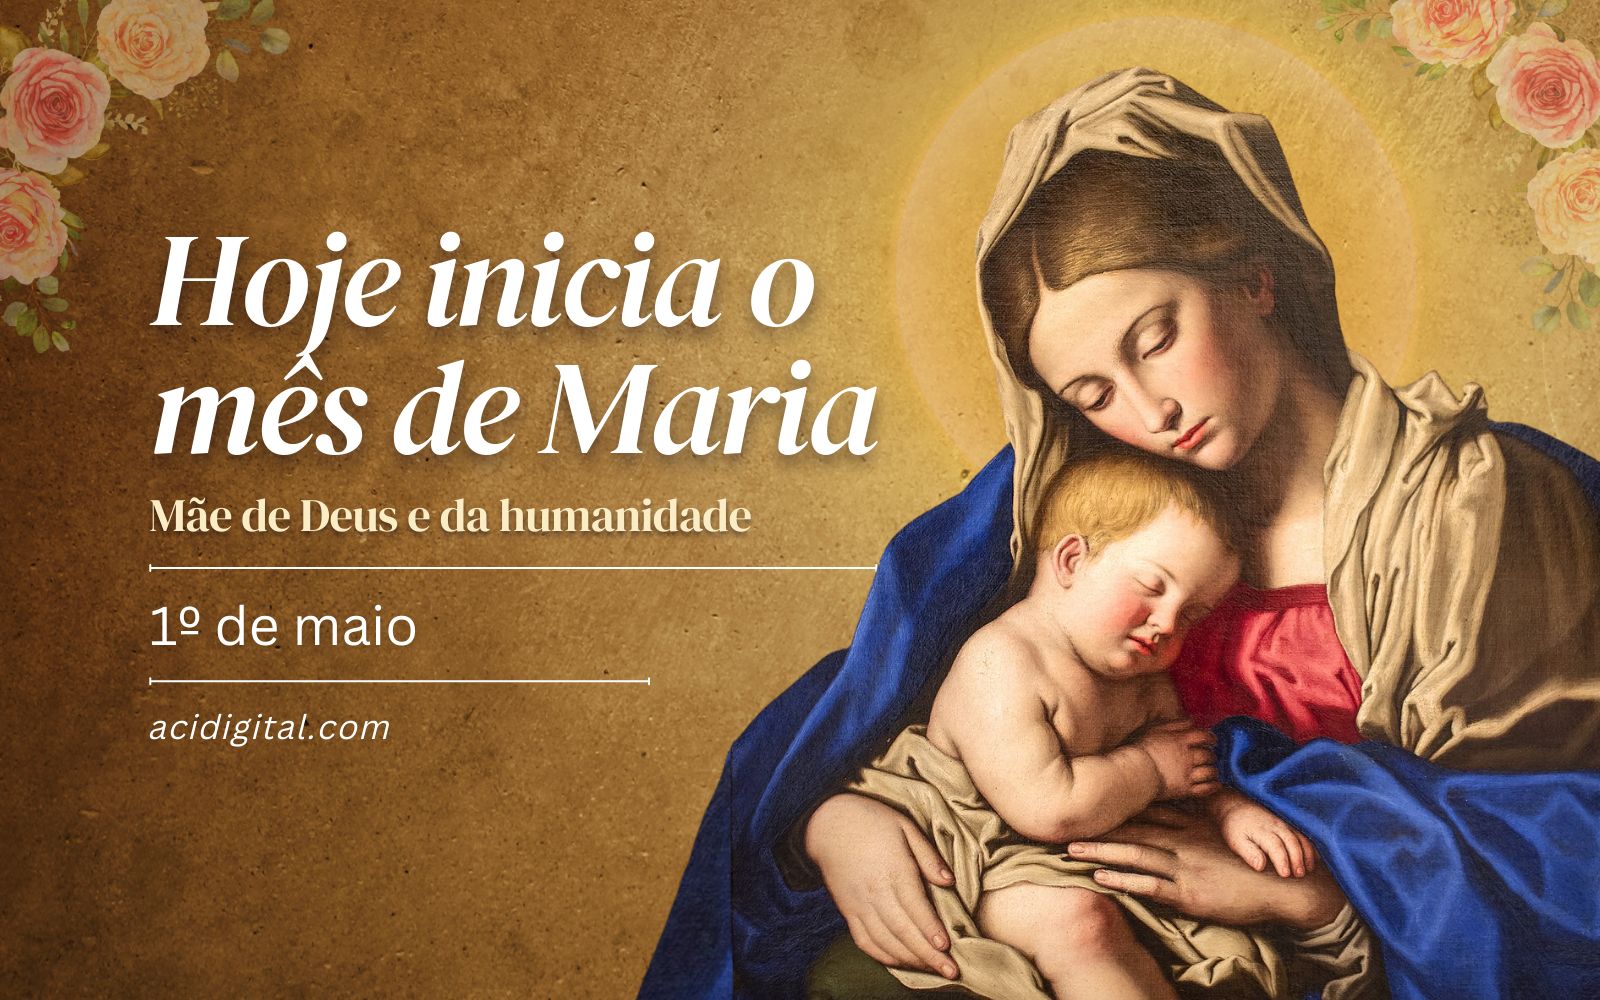 Maio é o mês dedicado a Maria